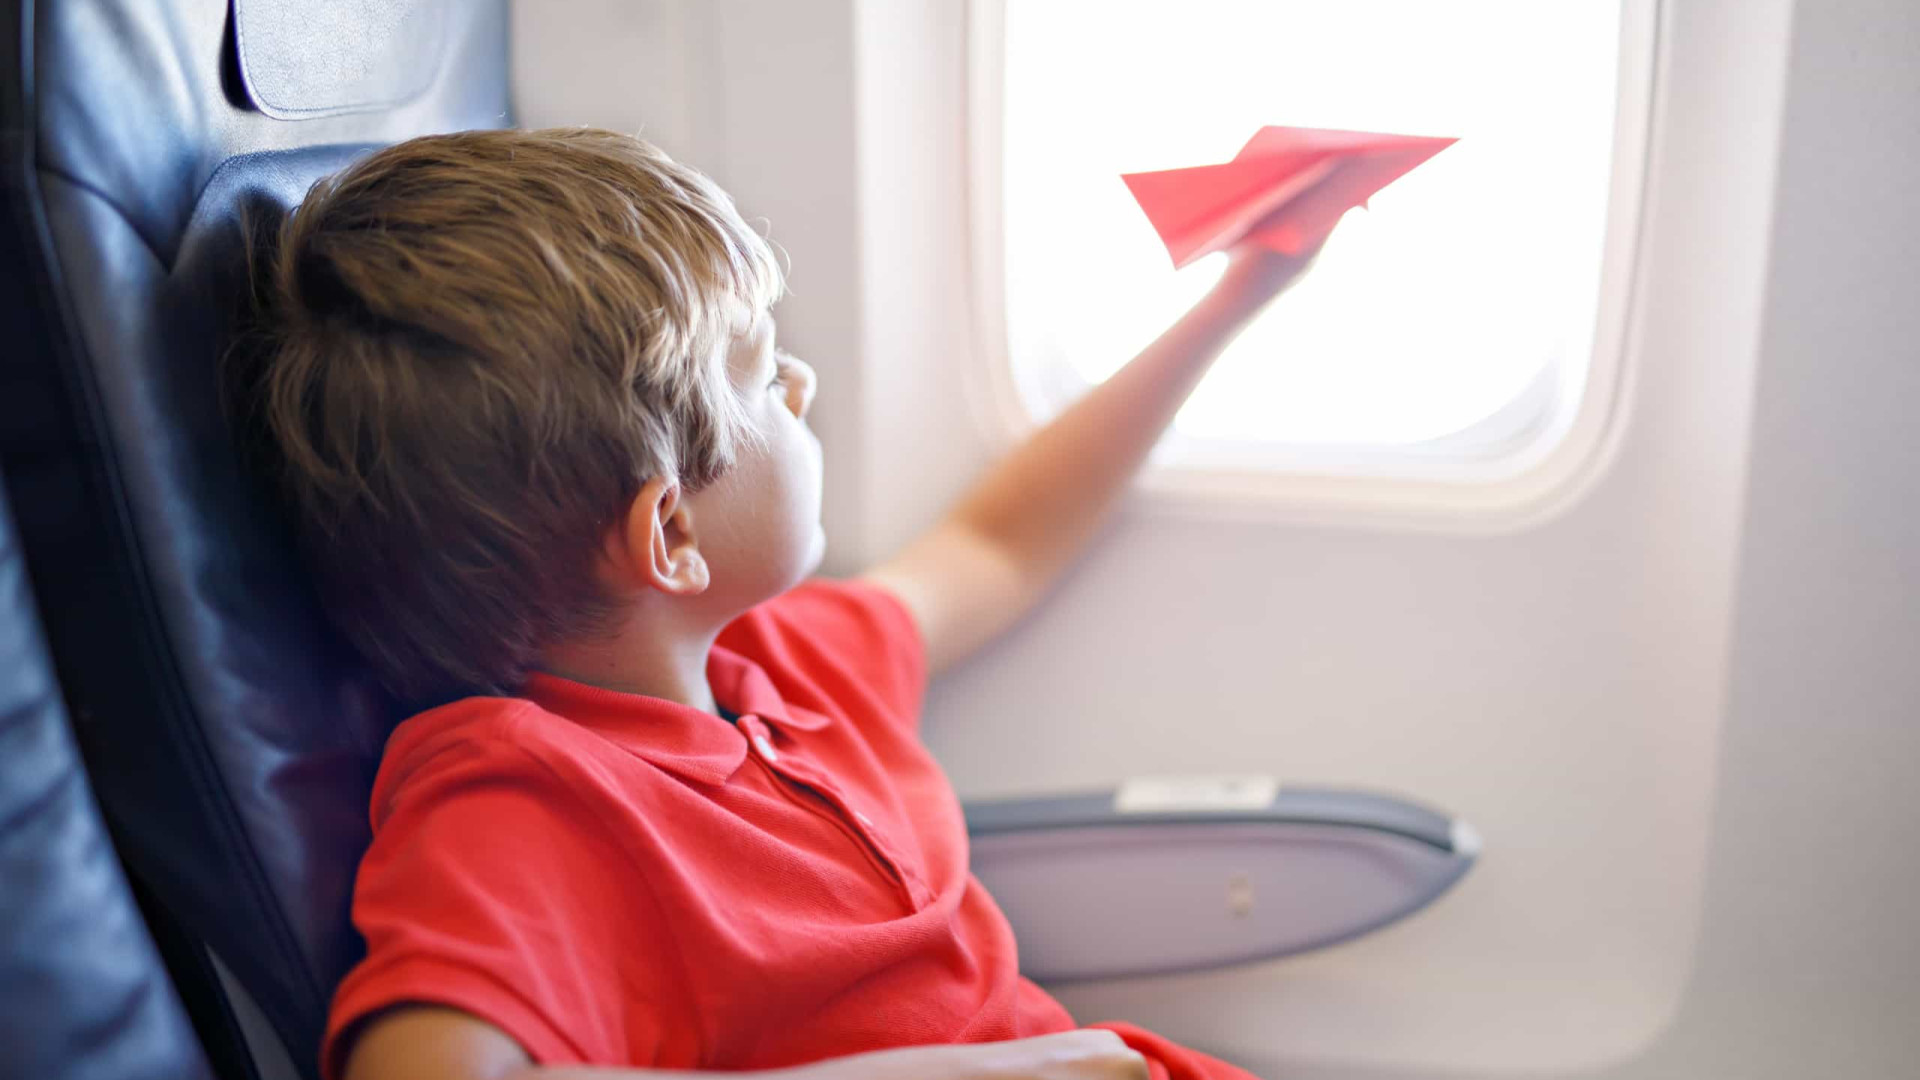 Pai deixa filho gritar em voo por 90 minutos para irritar passageiro 